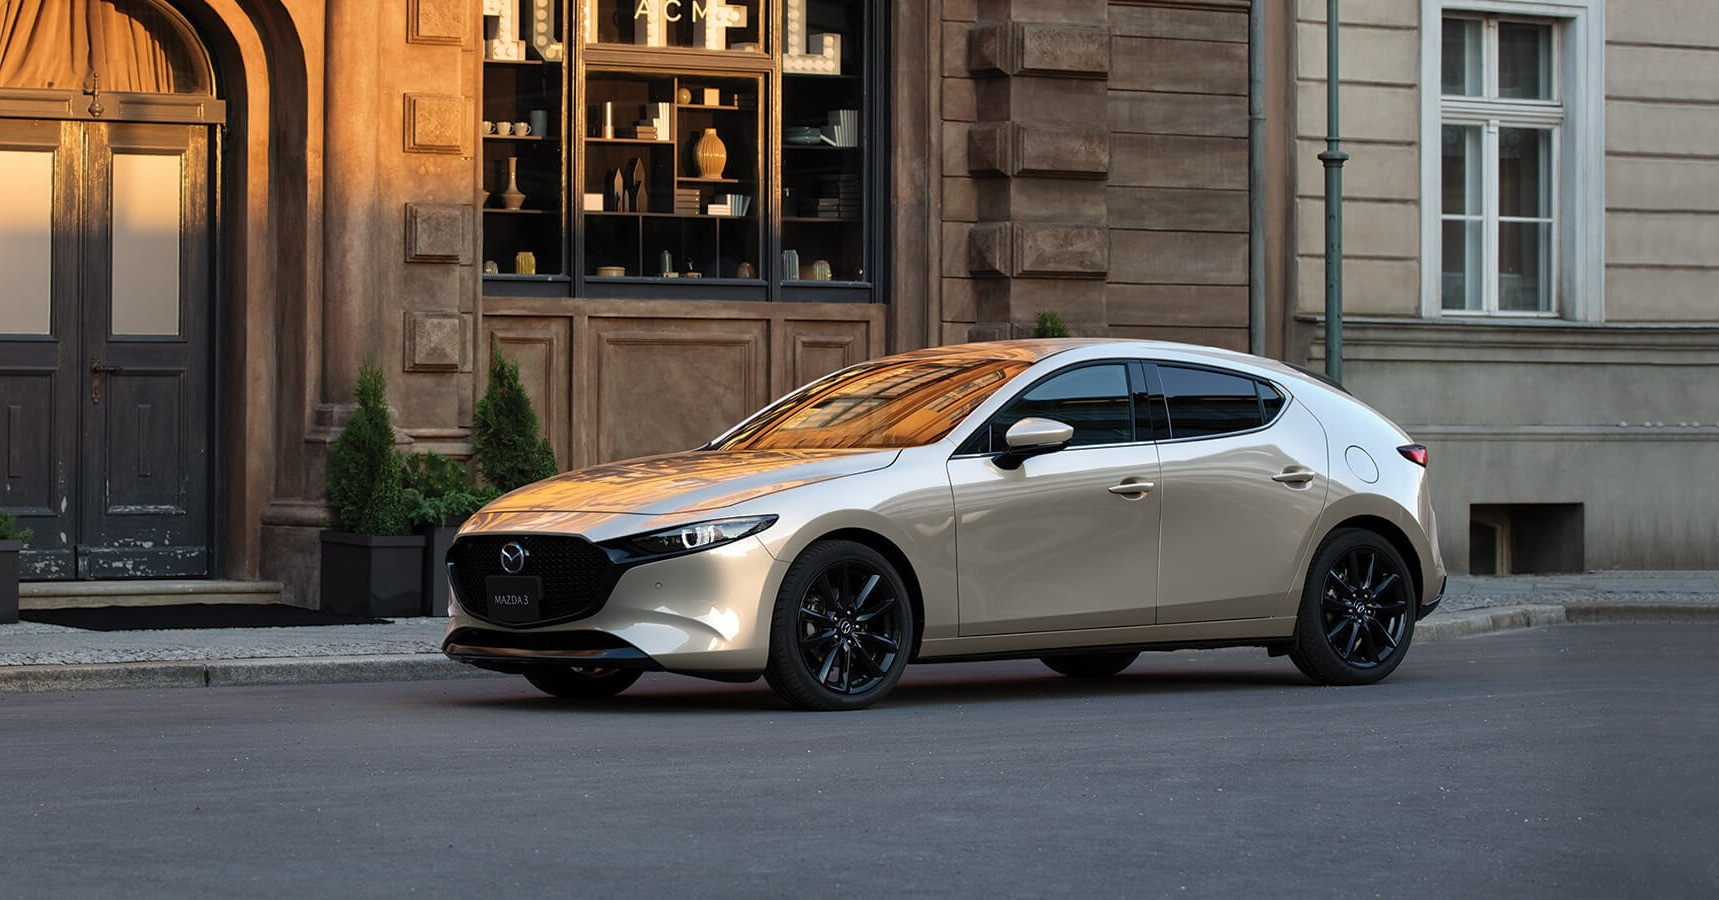 Giá xe 600 triệu đồng, Mazda3 phải cạnh tranh với những mẫu xe nào?